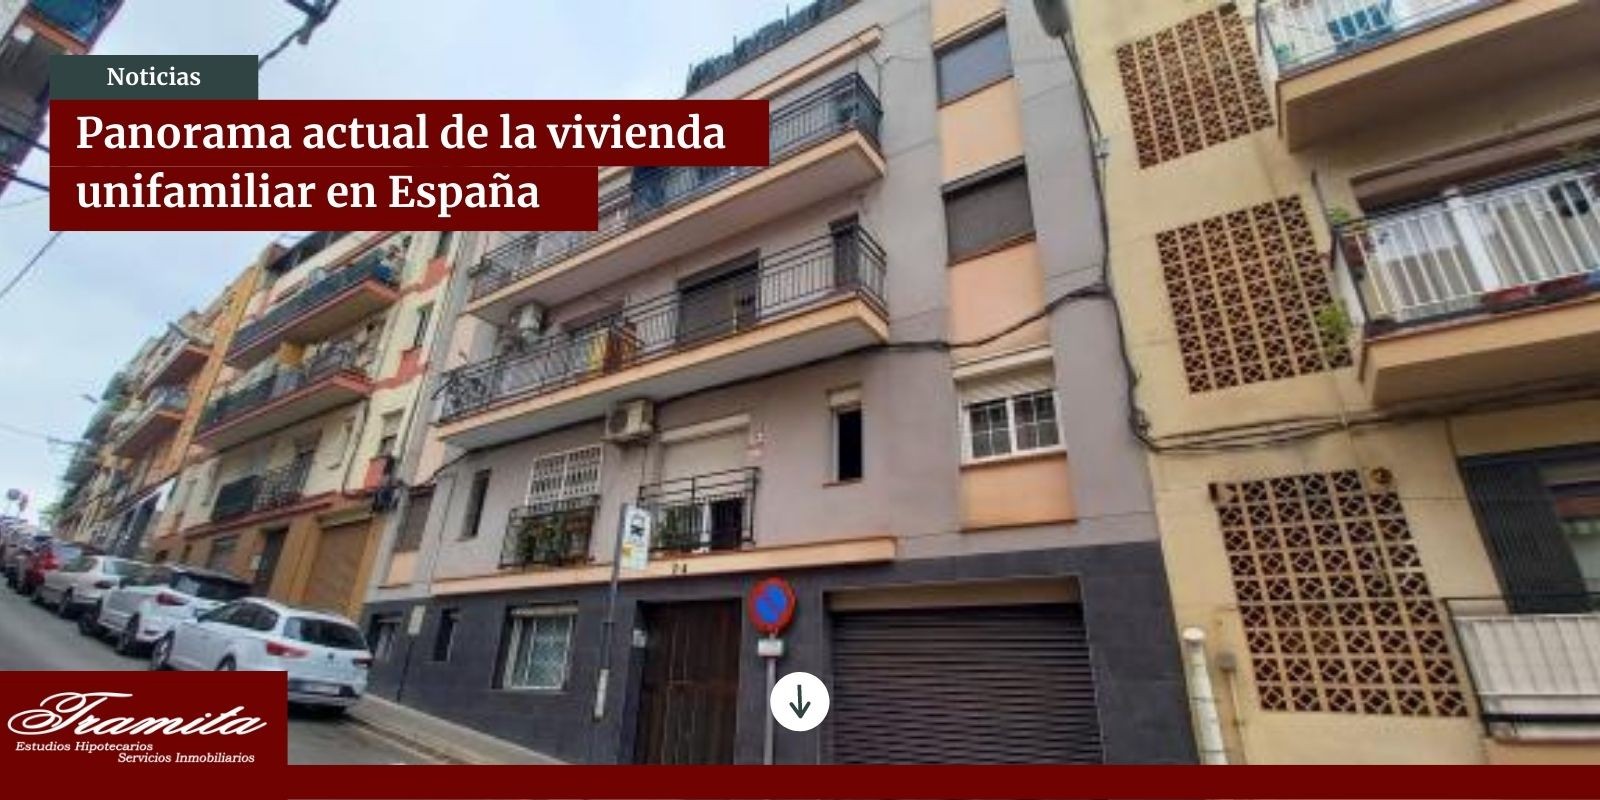 Panorama actual de la vivienda unifamiliar en España